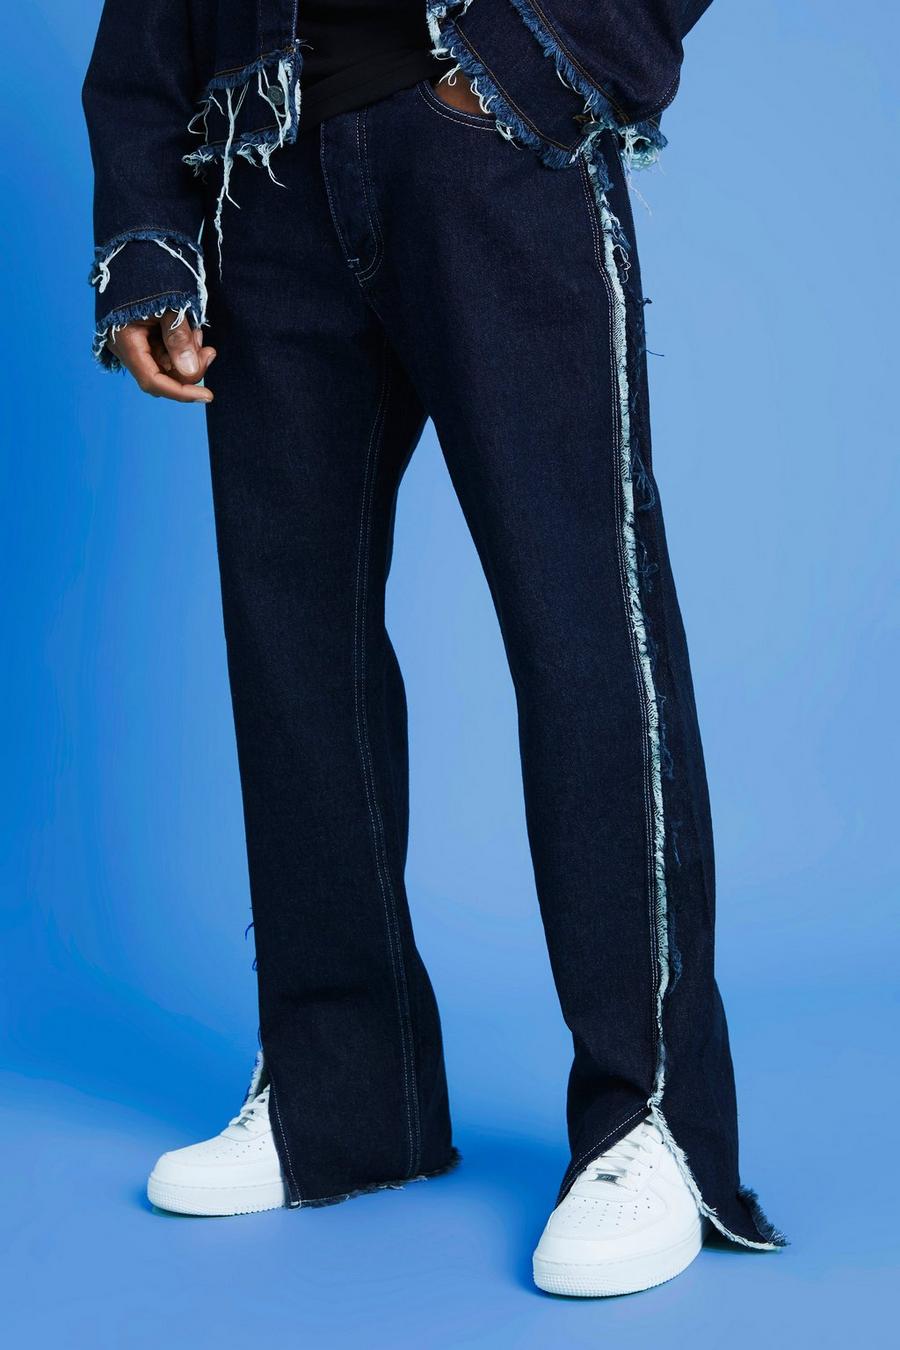 Lockere Jeans mit ausgefranstem Saum und geteiltem Saum, Indigo blau